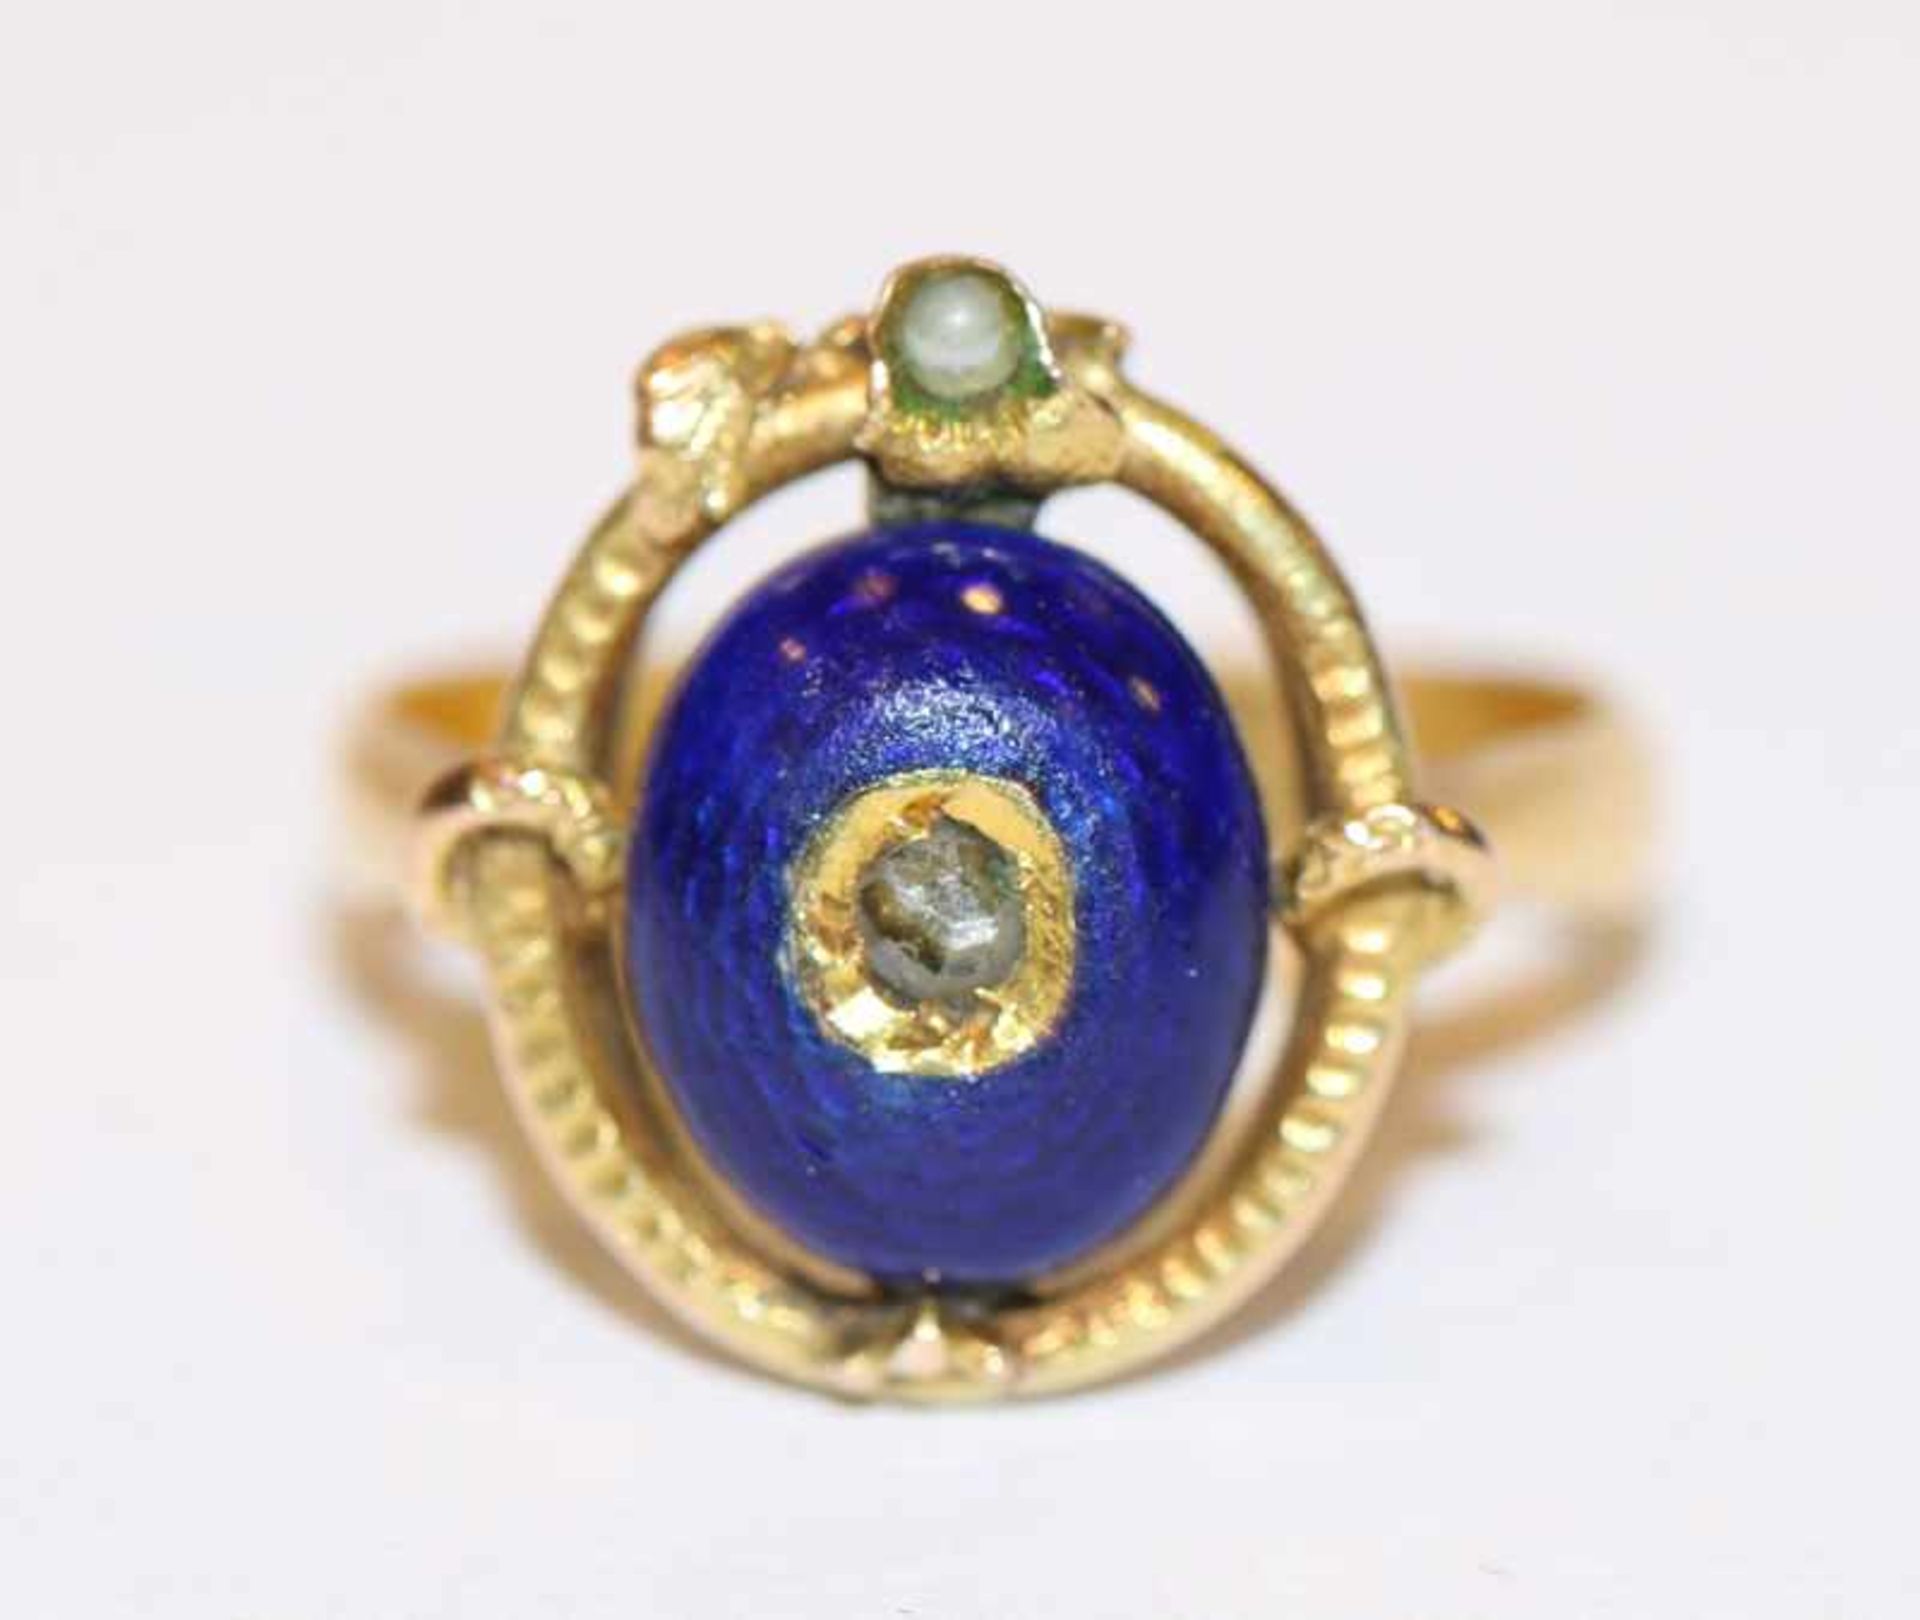 18 k (geprüft) Gelbgold Ring mit dunkelblauem Glas, Gr. 51, Alters- und Tragespuren